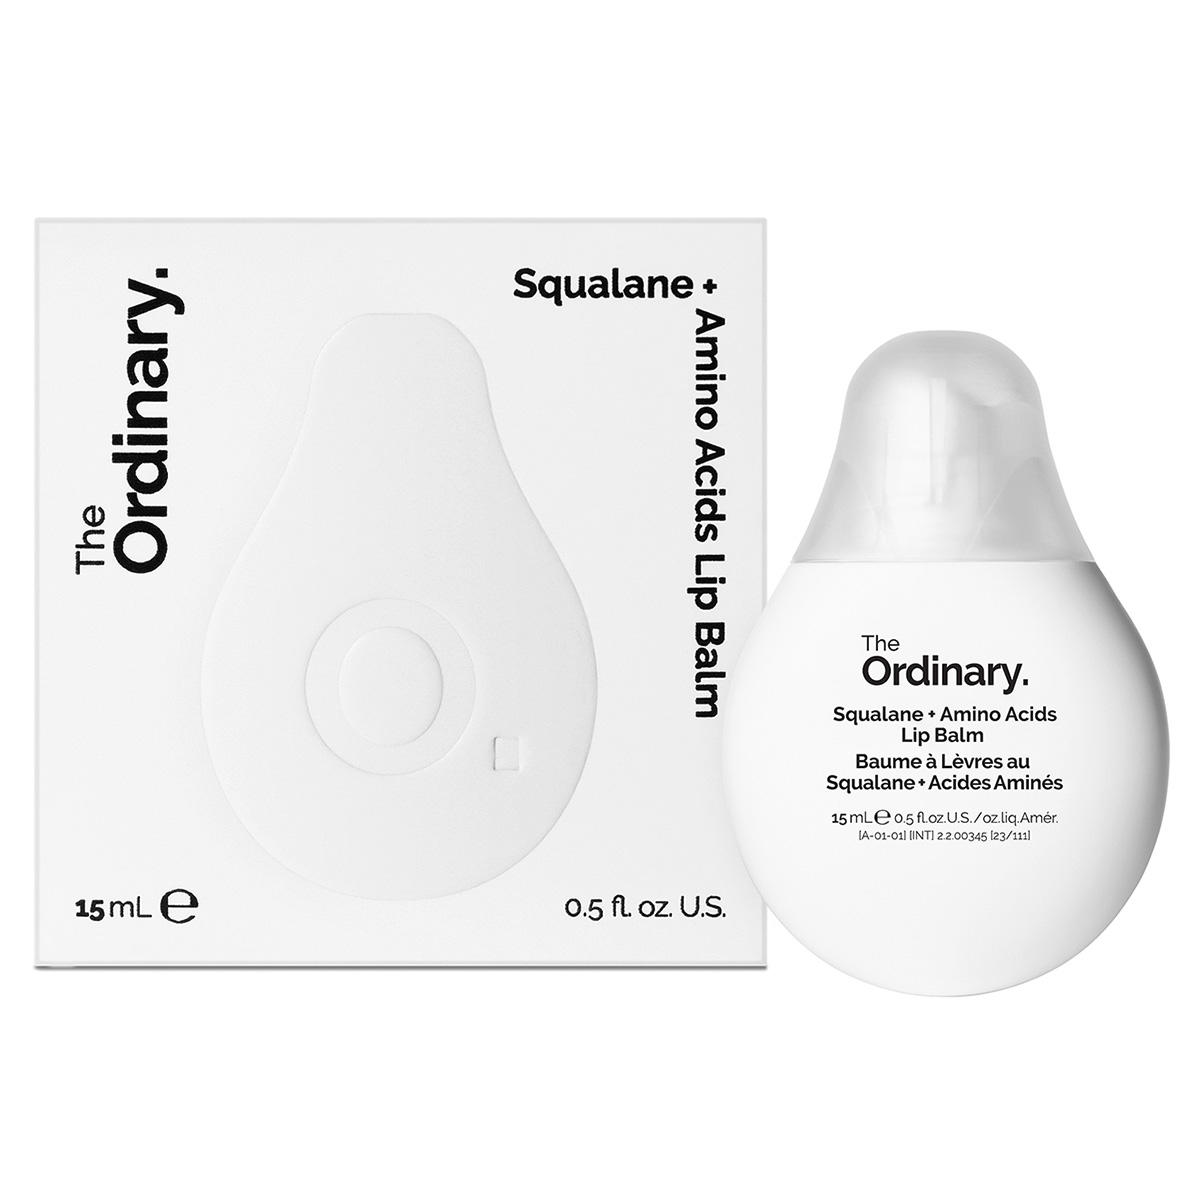 The Ordinary Squalane + Amino Acids Lip Balm 15 ml - 2